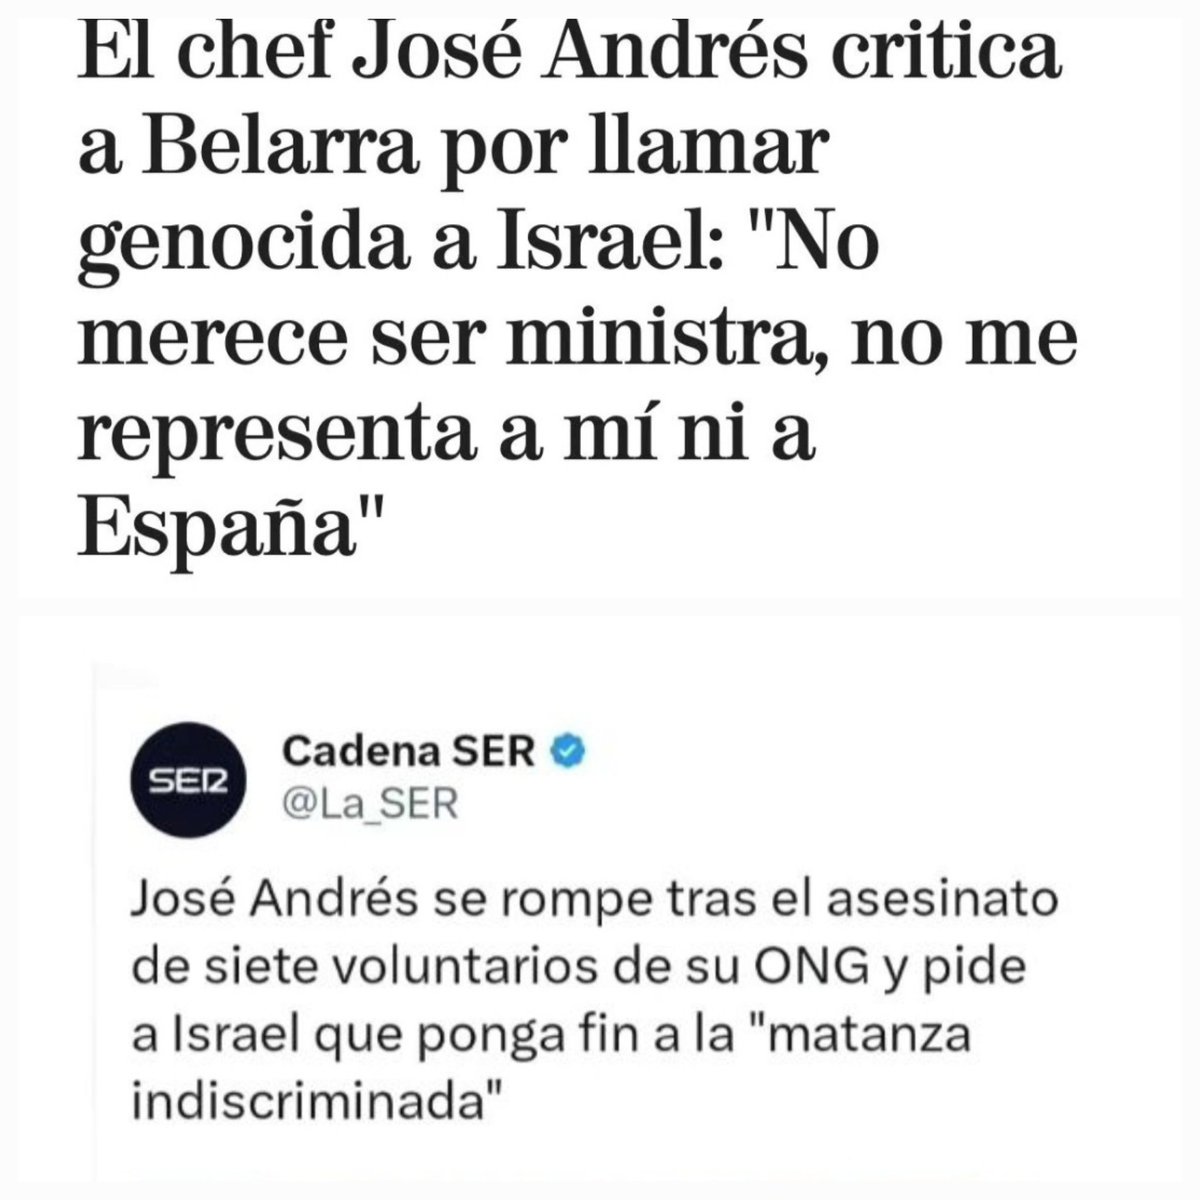 Éstos son mis principios, y si no le gustan, tengo otros'.
Chef José Andrés. 
#FreePalestineFromlsrael